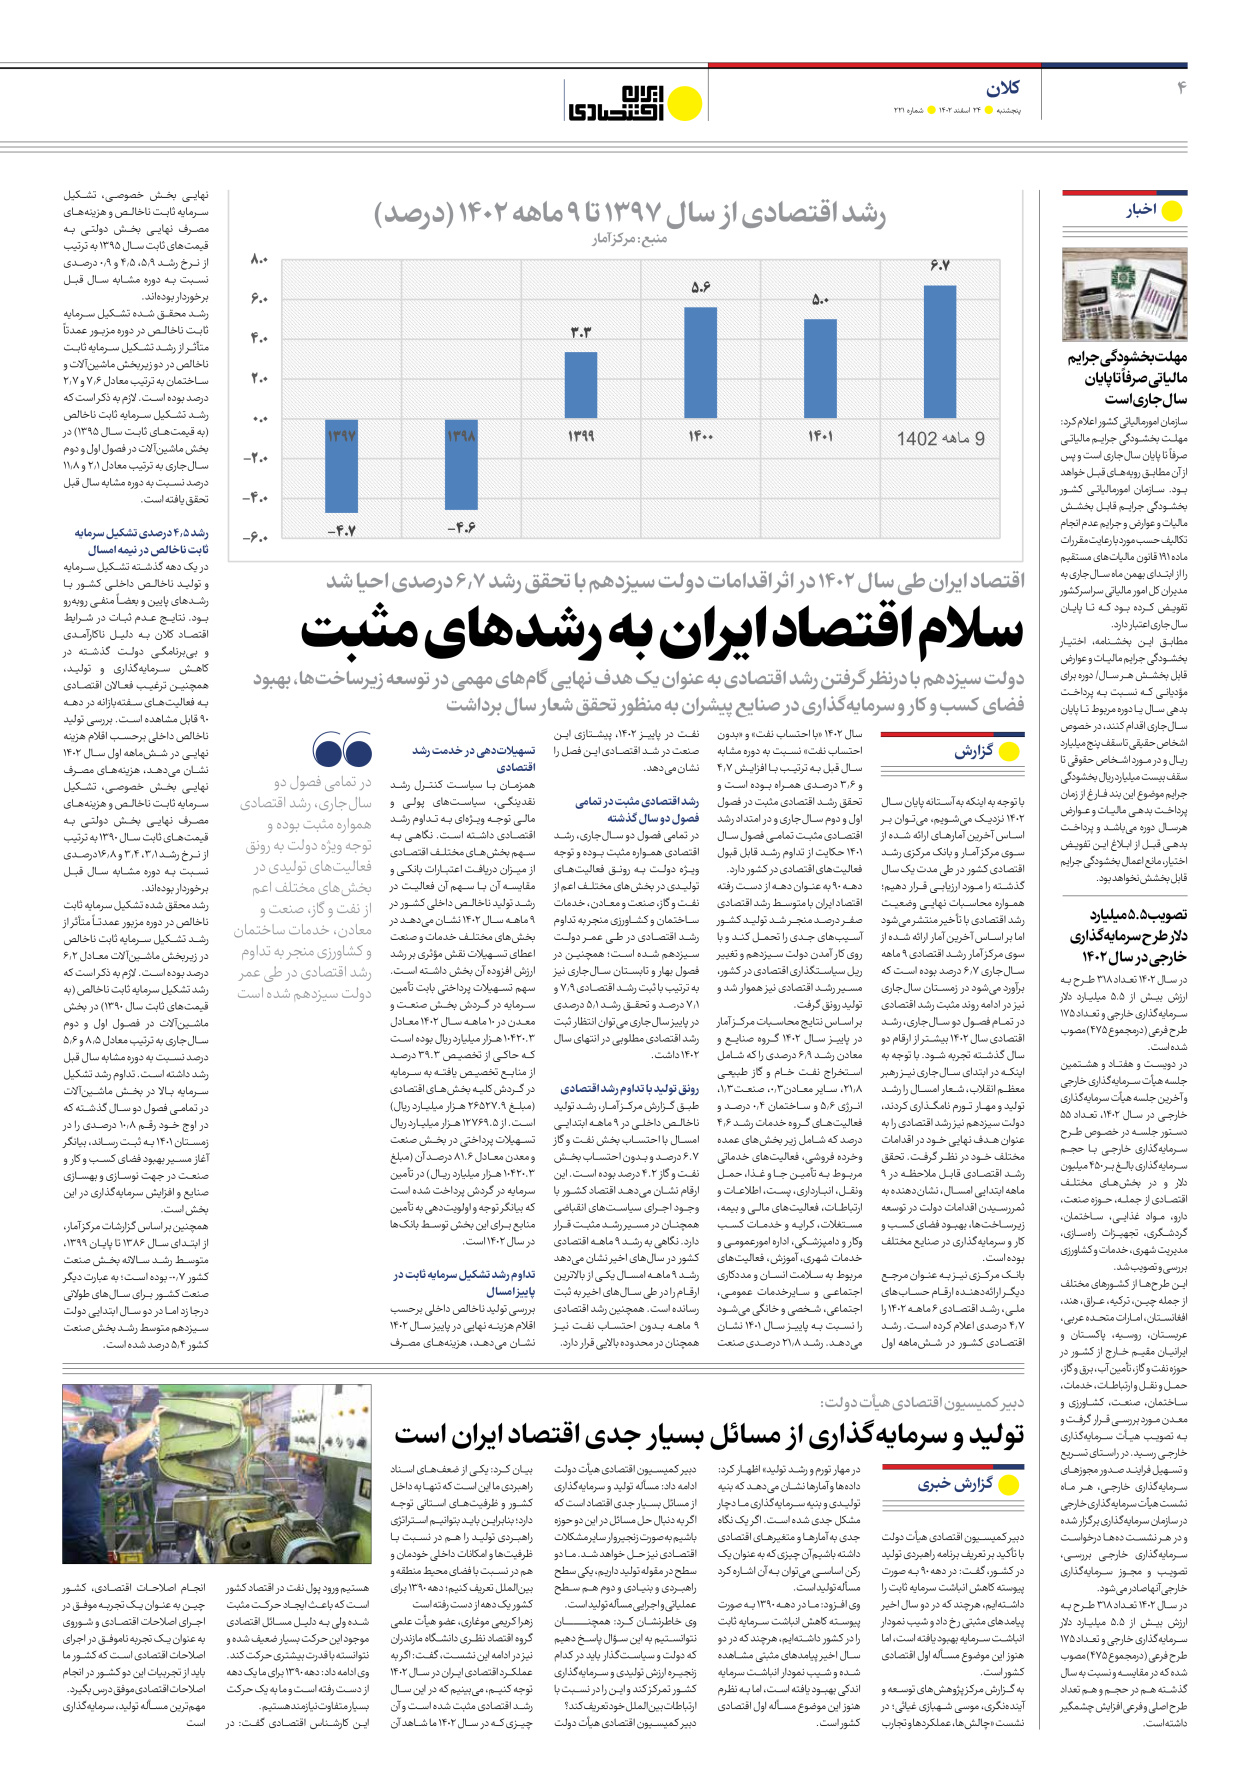 روزنامه ایران اقتصادی - شماره دویست و بیست و یک - ۲۴ اسفند ۱۴۰۲ - صفحه ۴